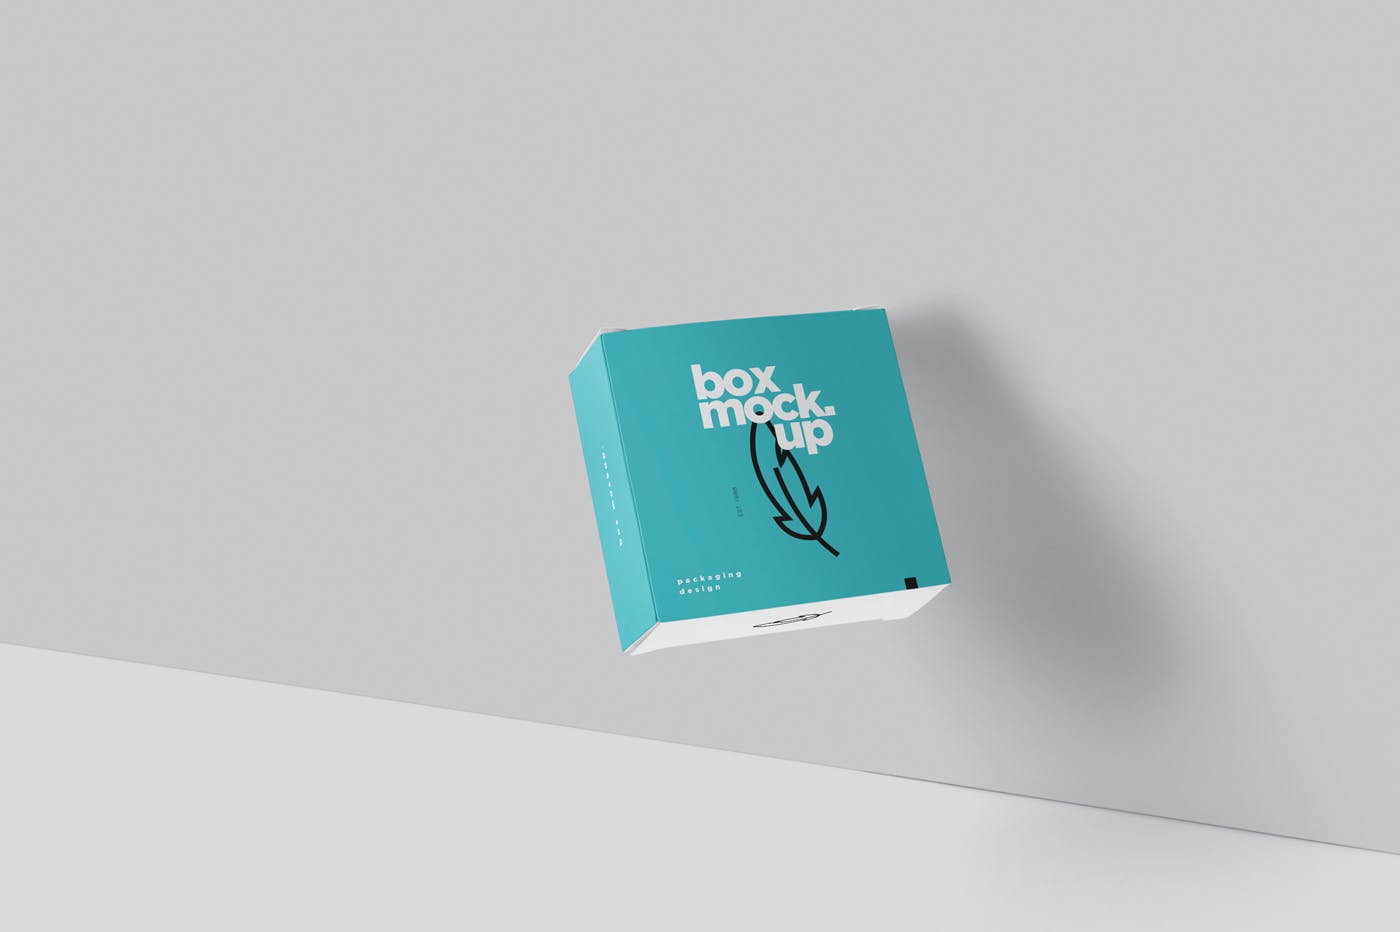 扁平方形包装盒外观设计效果图蚂蚁素材精选 Box Mockup – Square Slim Size插图(4)